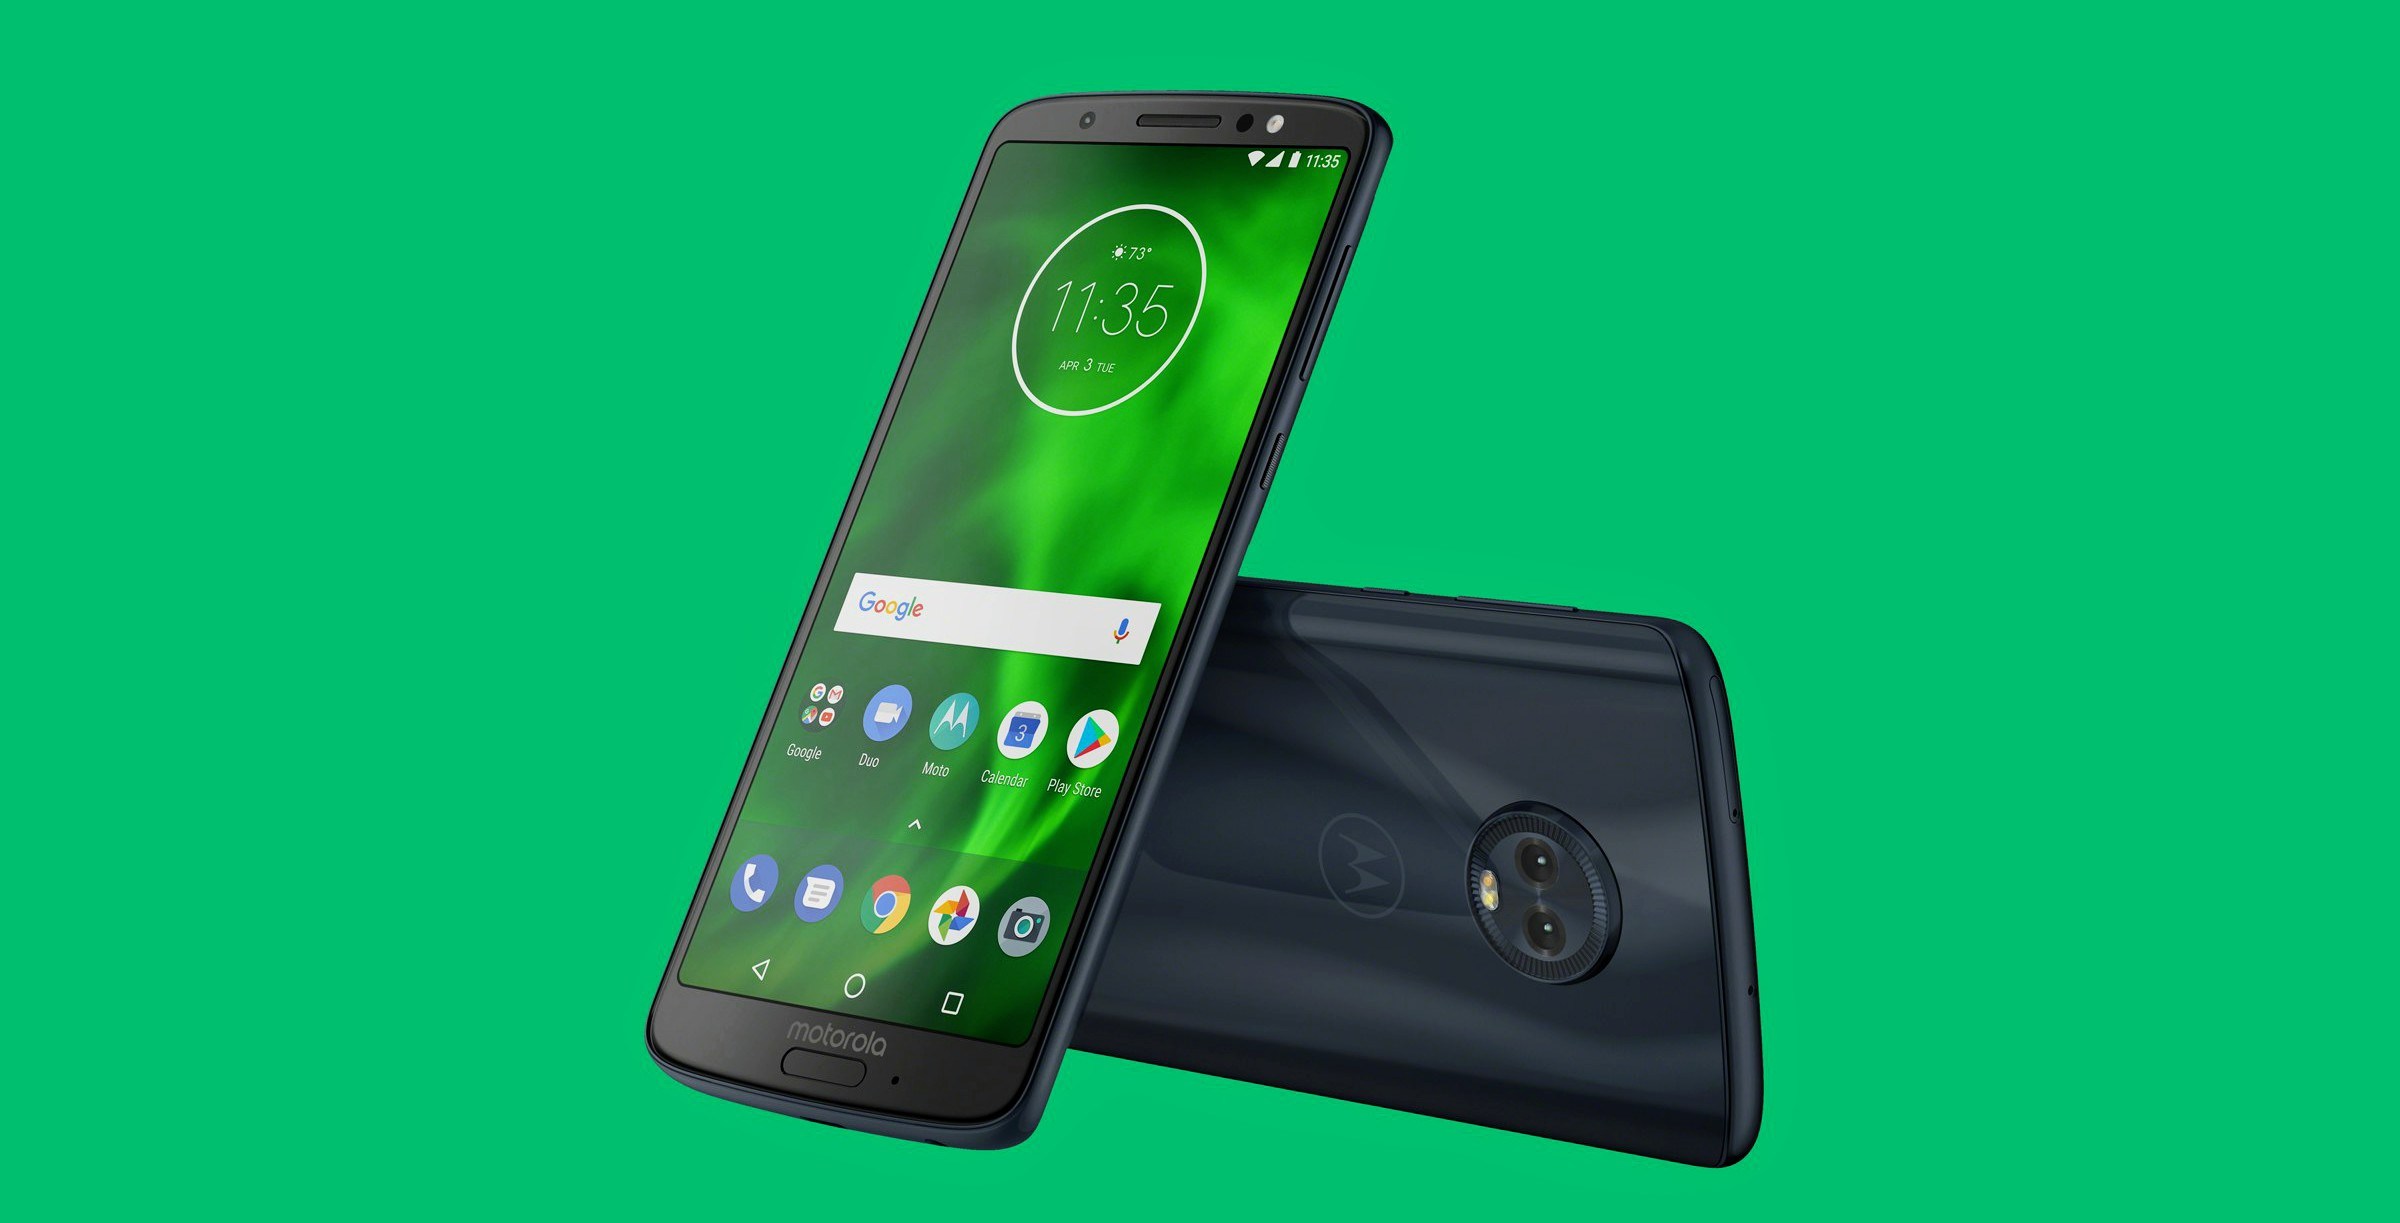 Moto G6 Indiako Android Pie eguneratzea jasotzen
